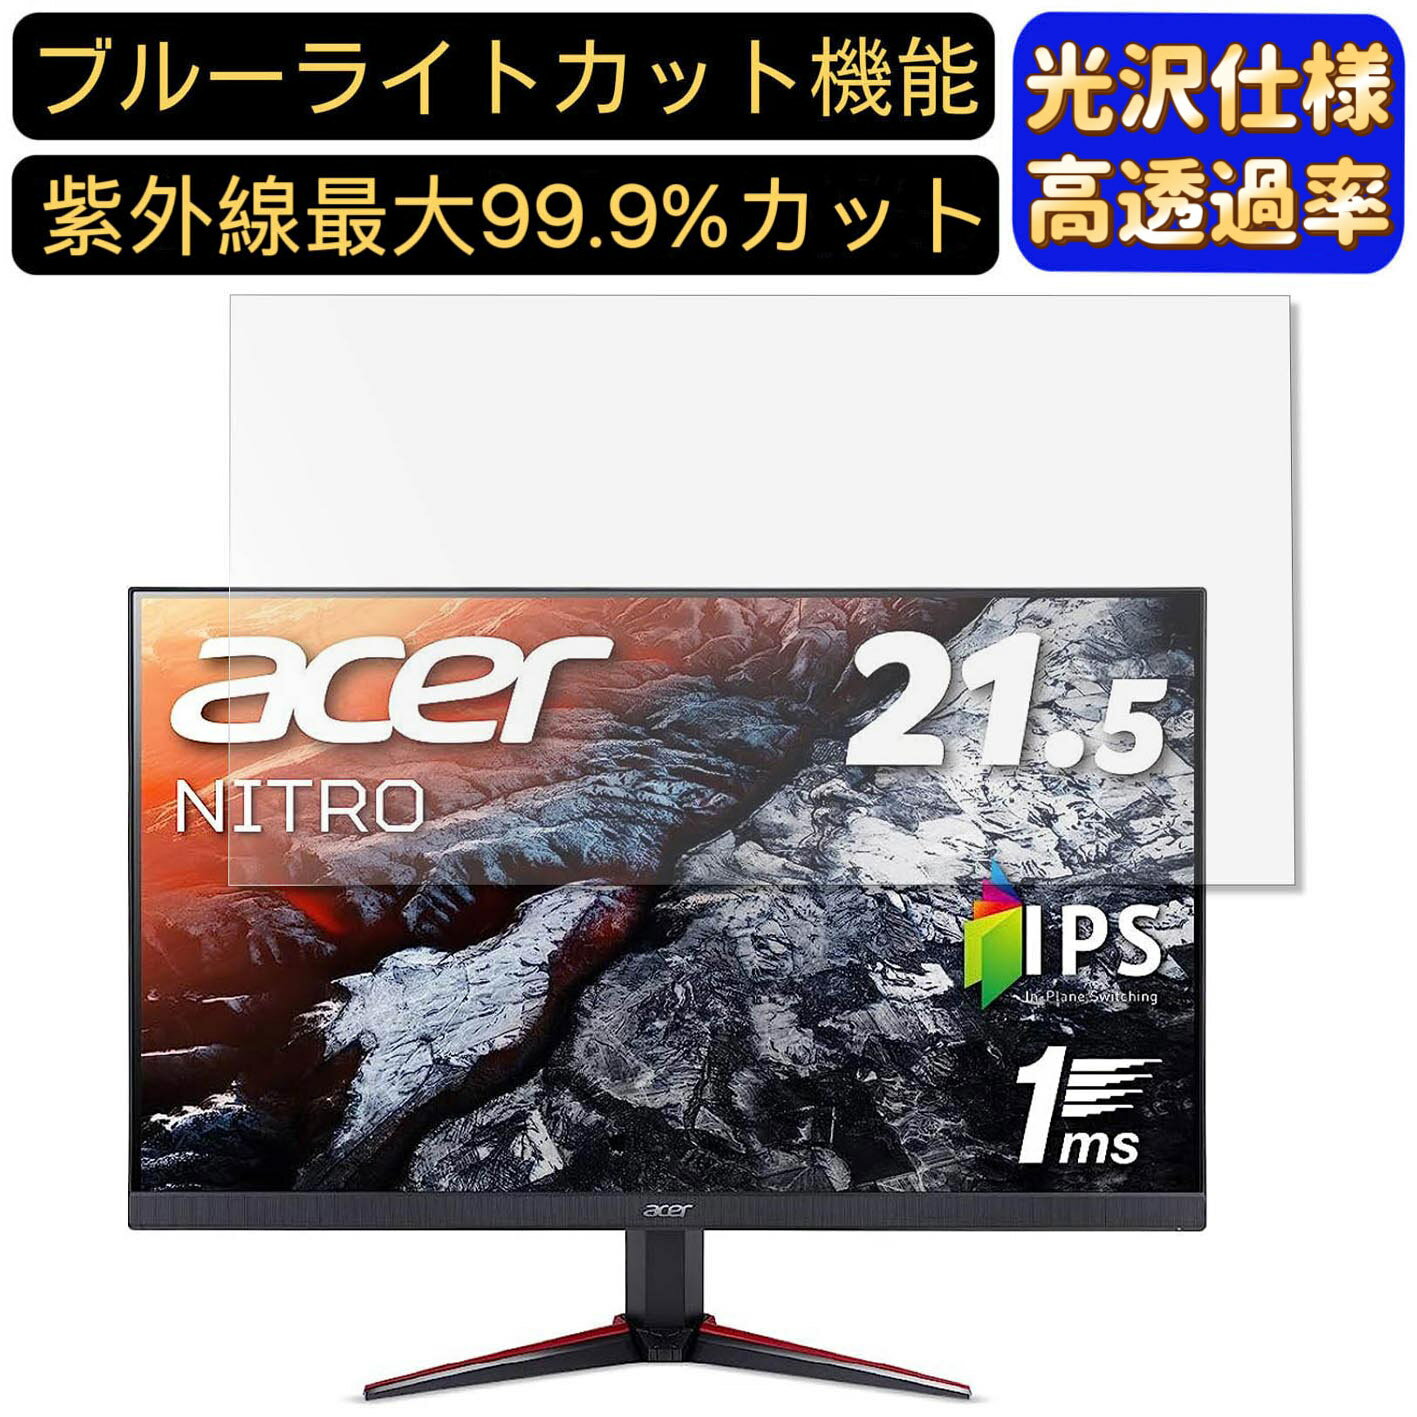 【ポイント2倍】Acer NITRO VG220Qbmiifx 21